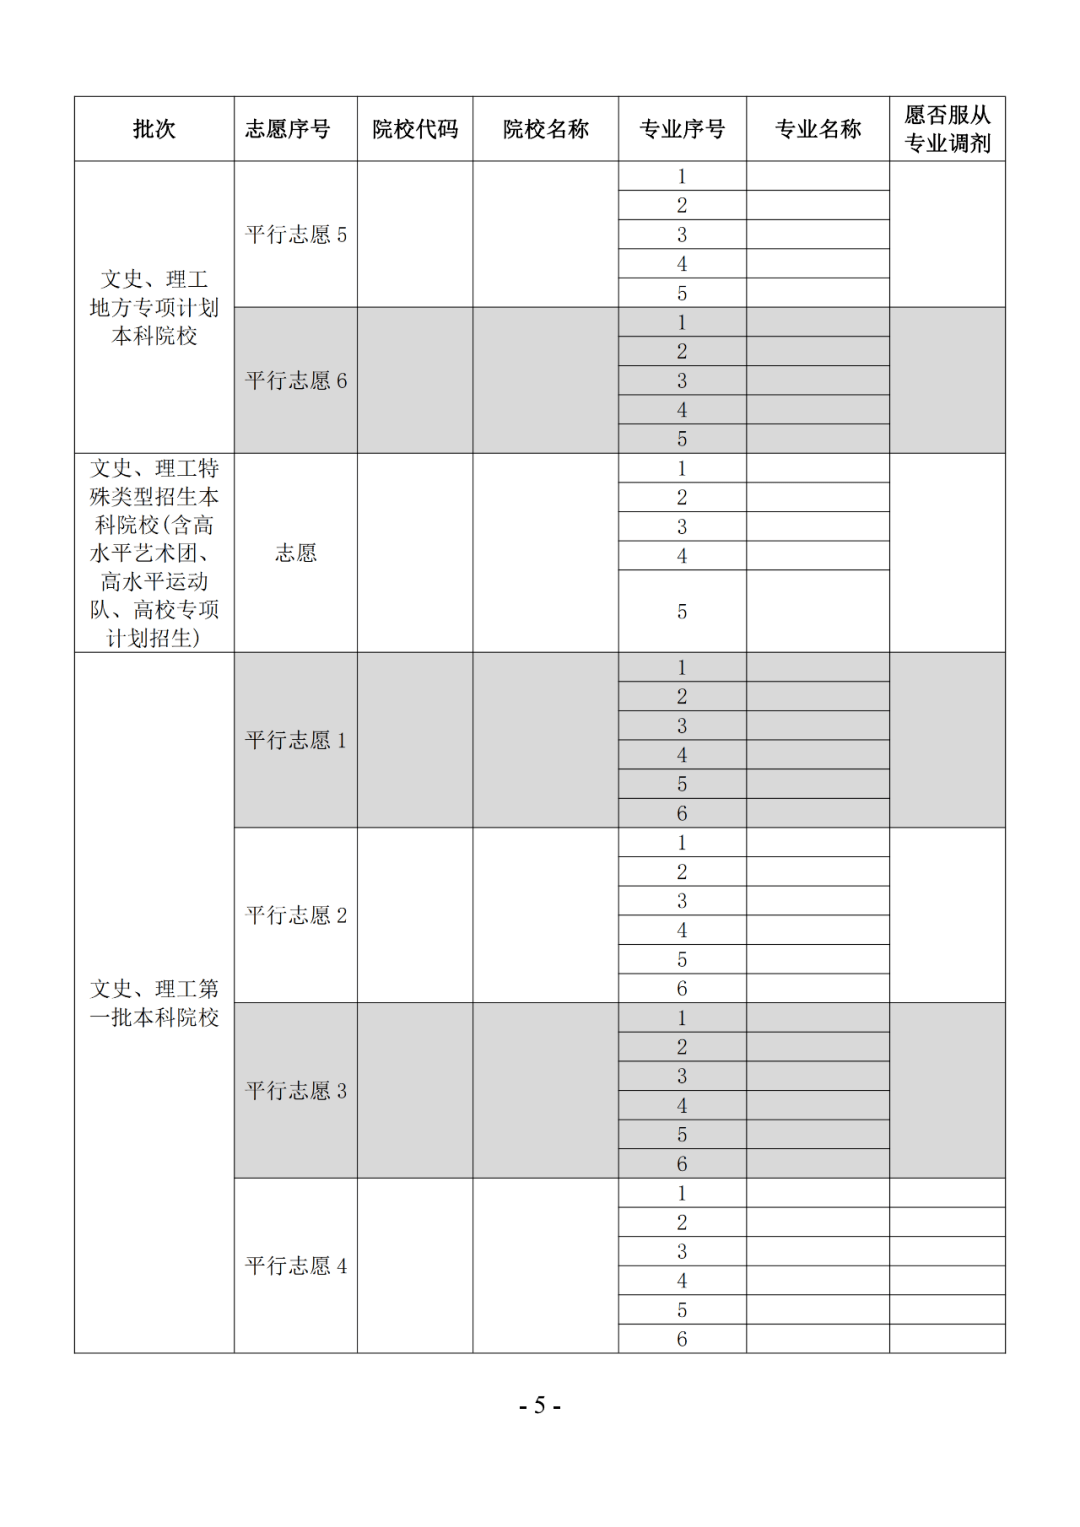 贵州高考志愿填报表图片